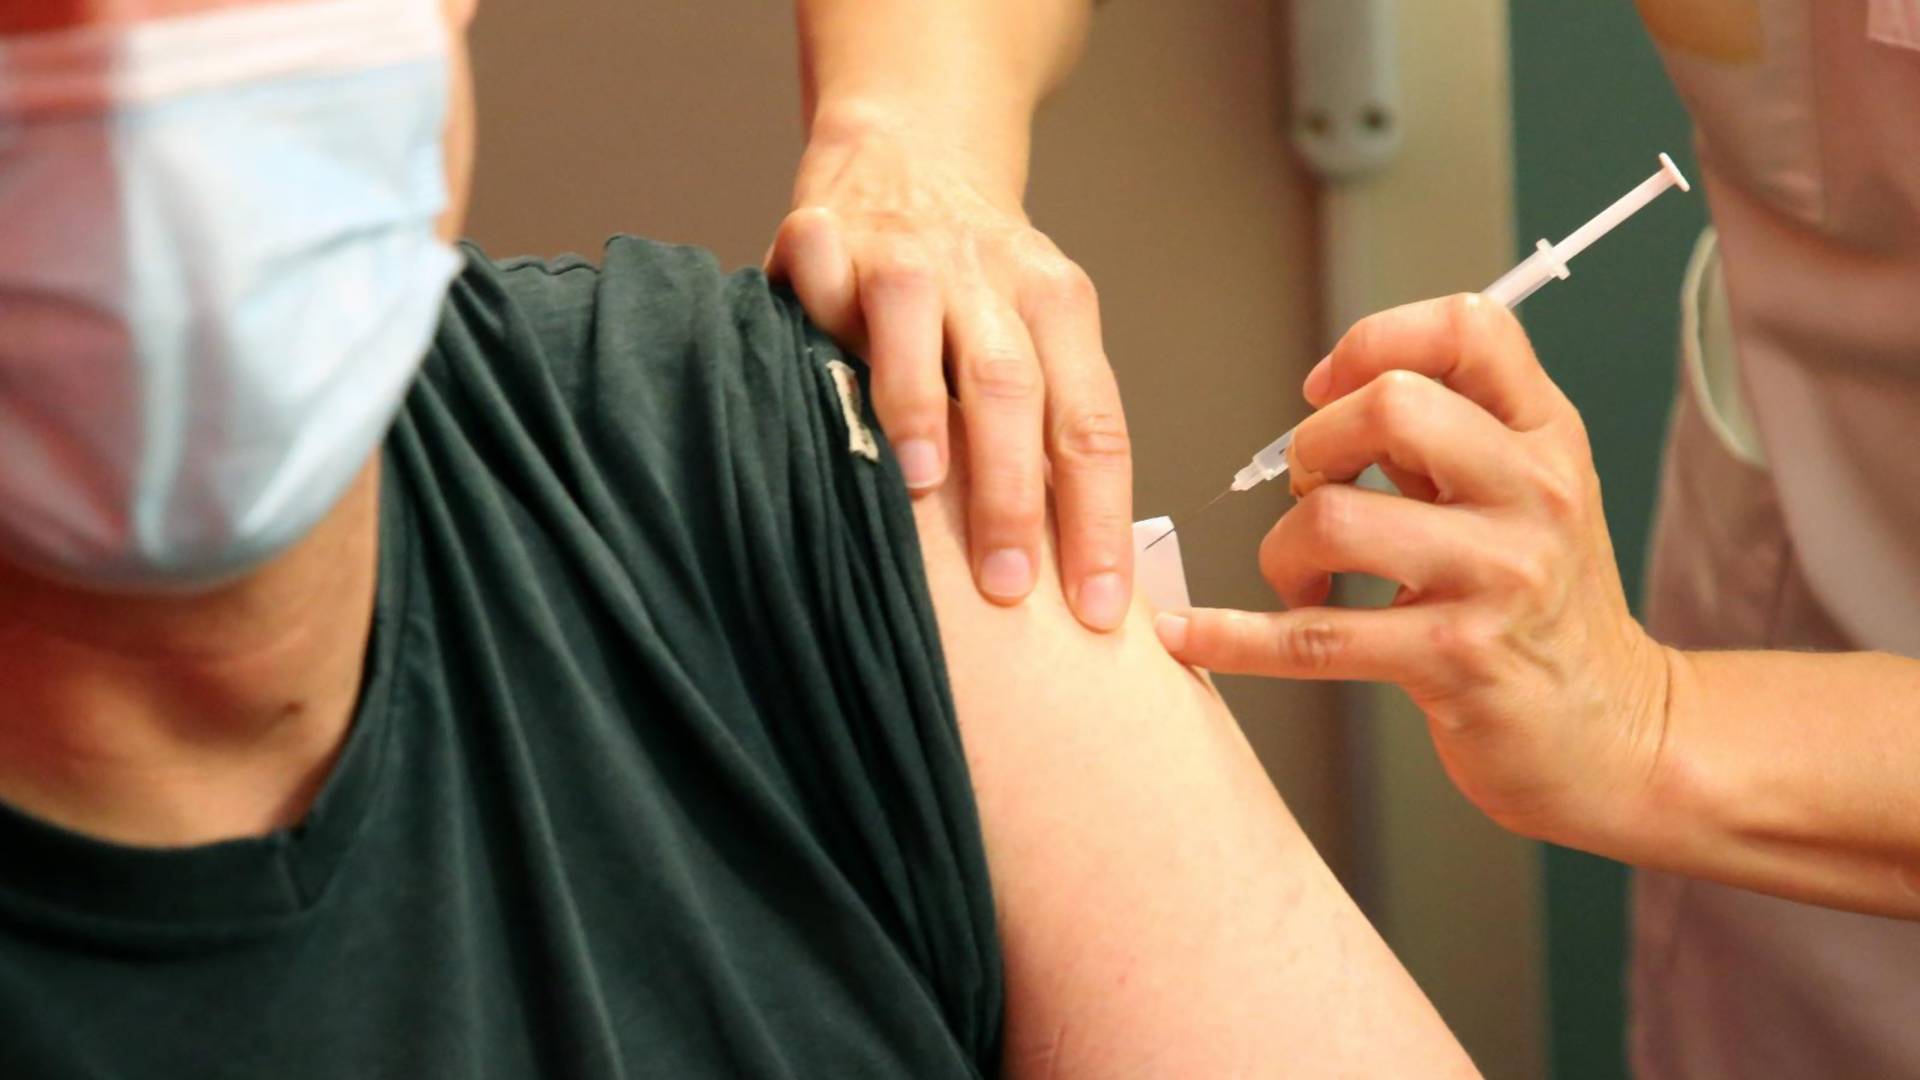 Italijan hteo da prevari zdravstveni sistem - stavio veštačku ruku kako ne bi primio vakcinu